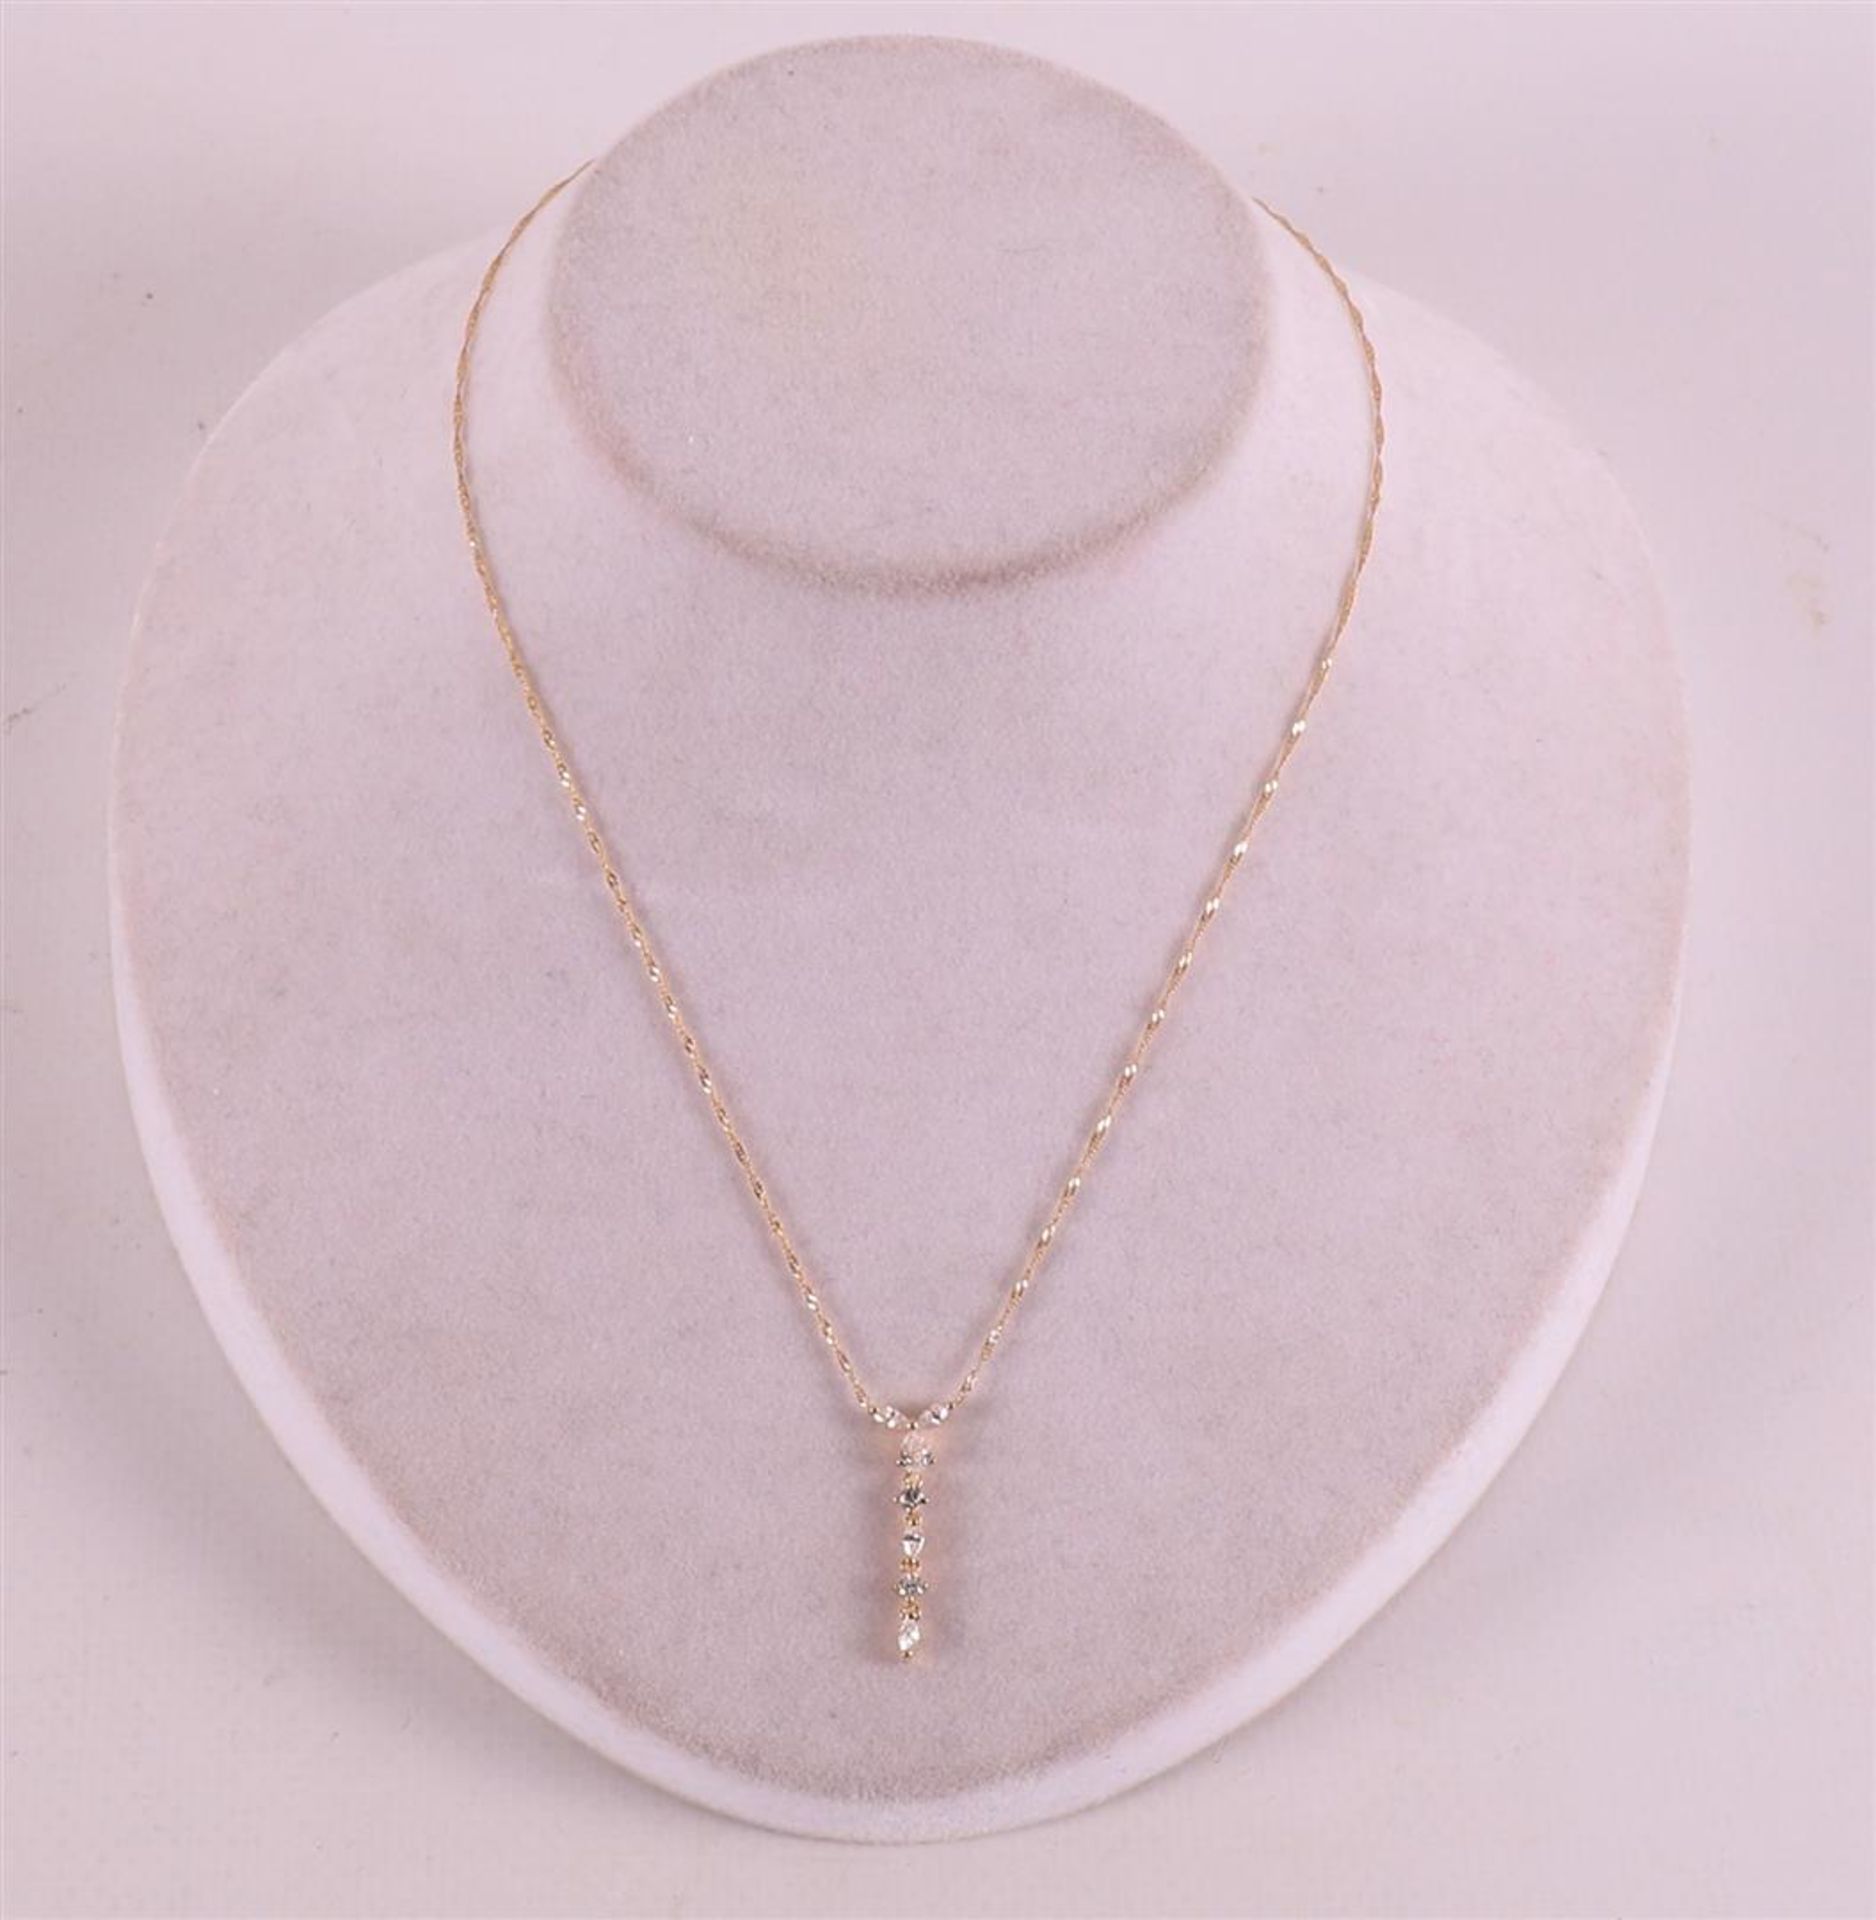 An 18 kt 750/1000 gold necklace with zirconias. - Bild 3 aus 3